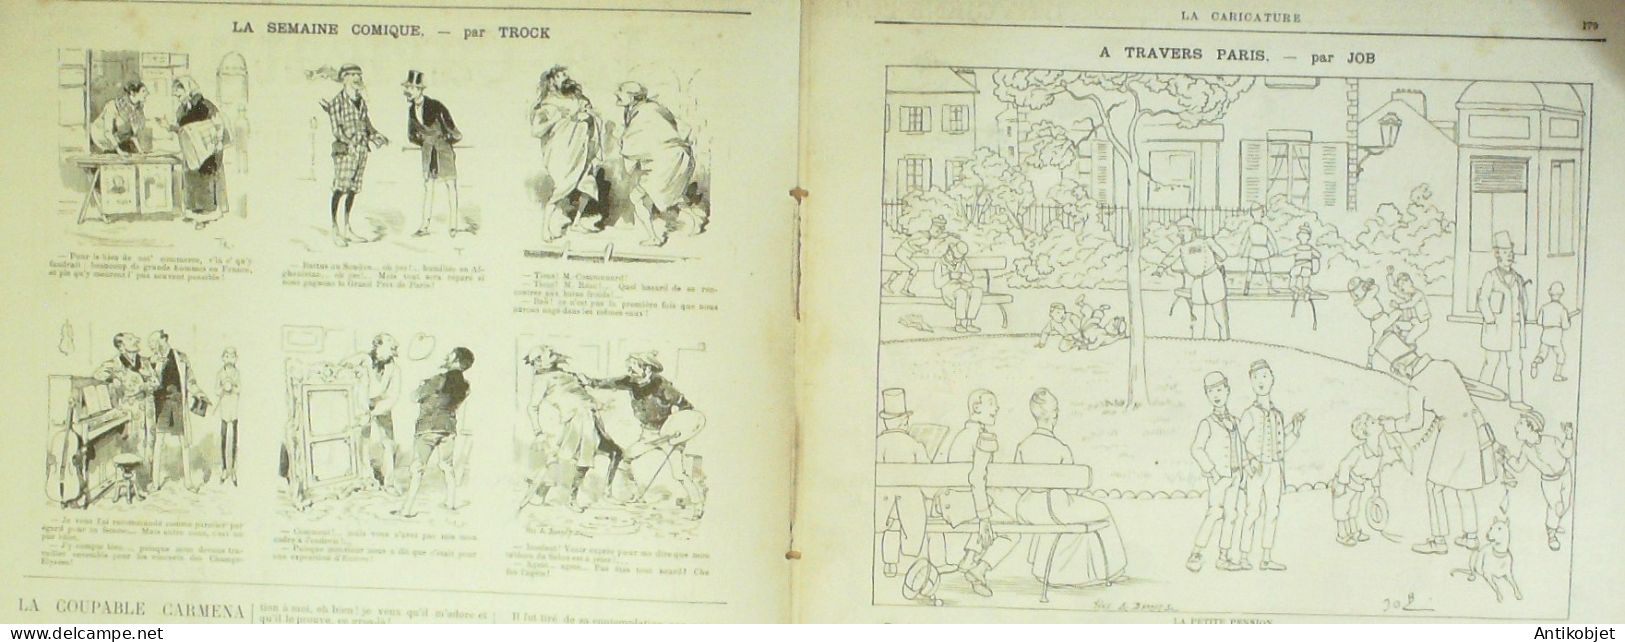 La Caricature 1885 N°284 Civils & Militaires Caran D'Ache Hygiène Trock Job - Revistas - Antes 1900